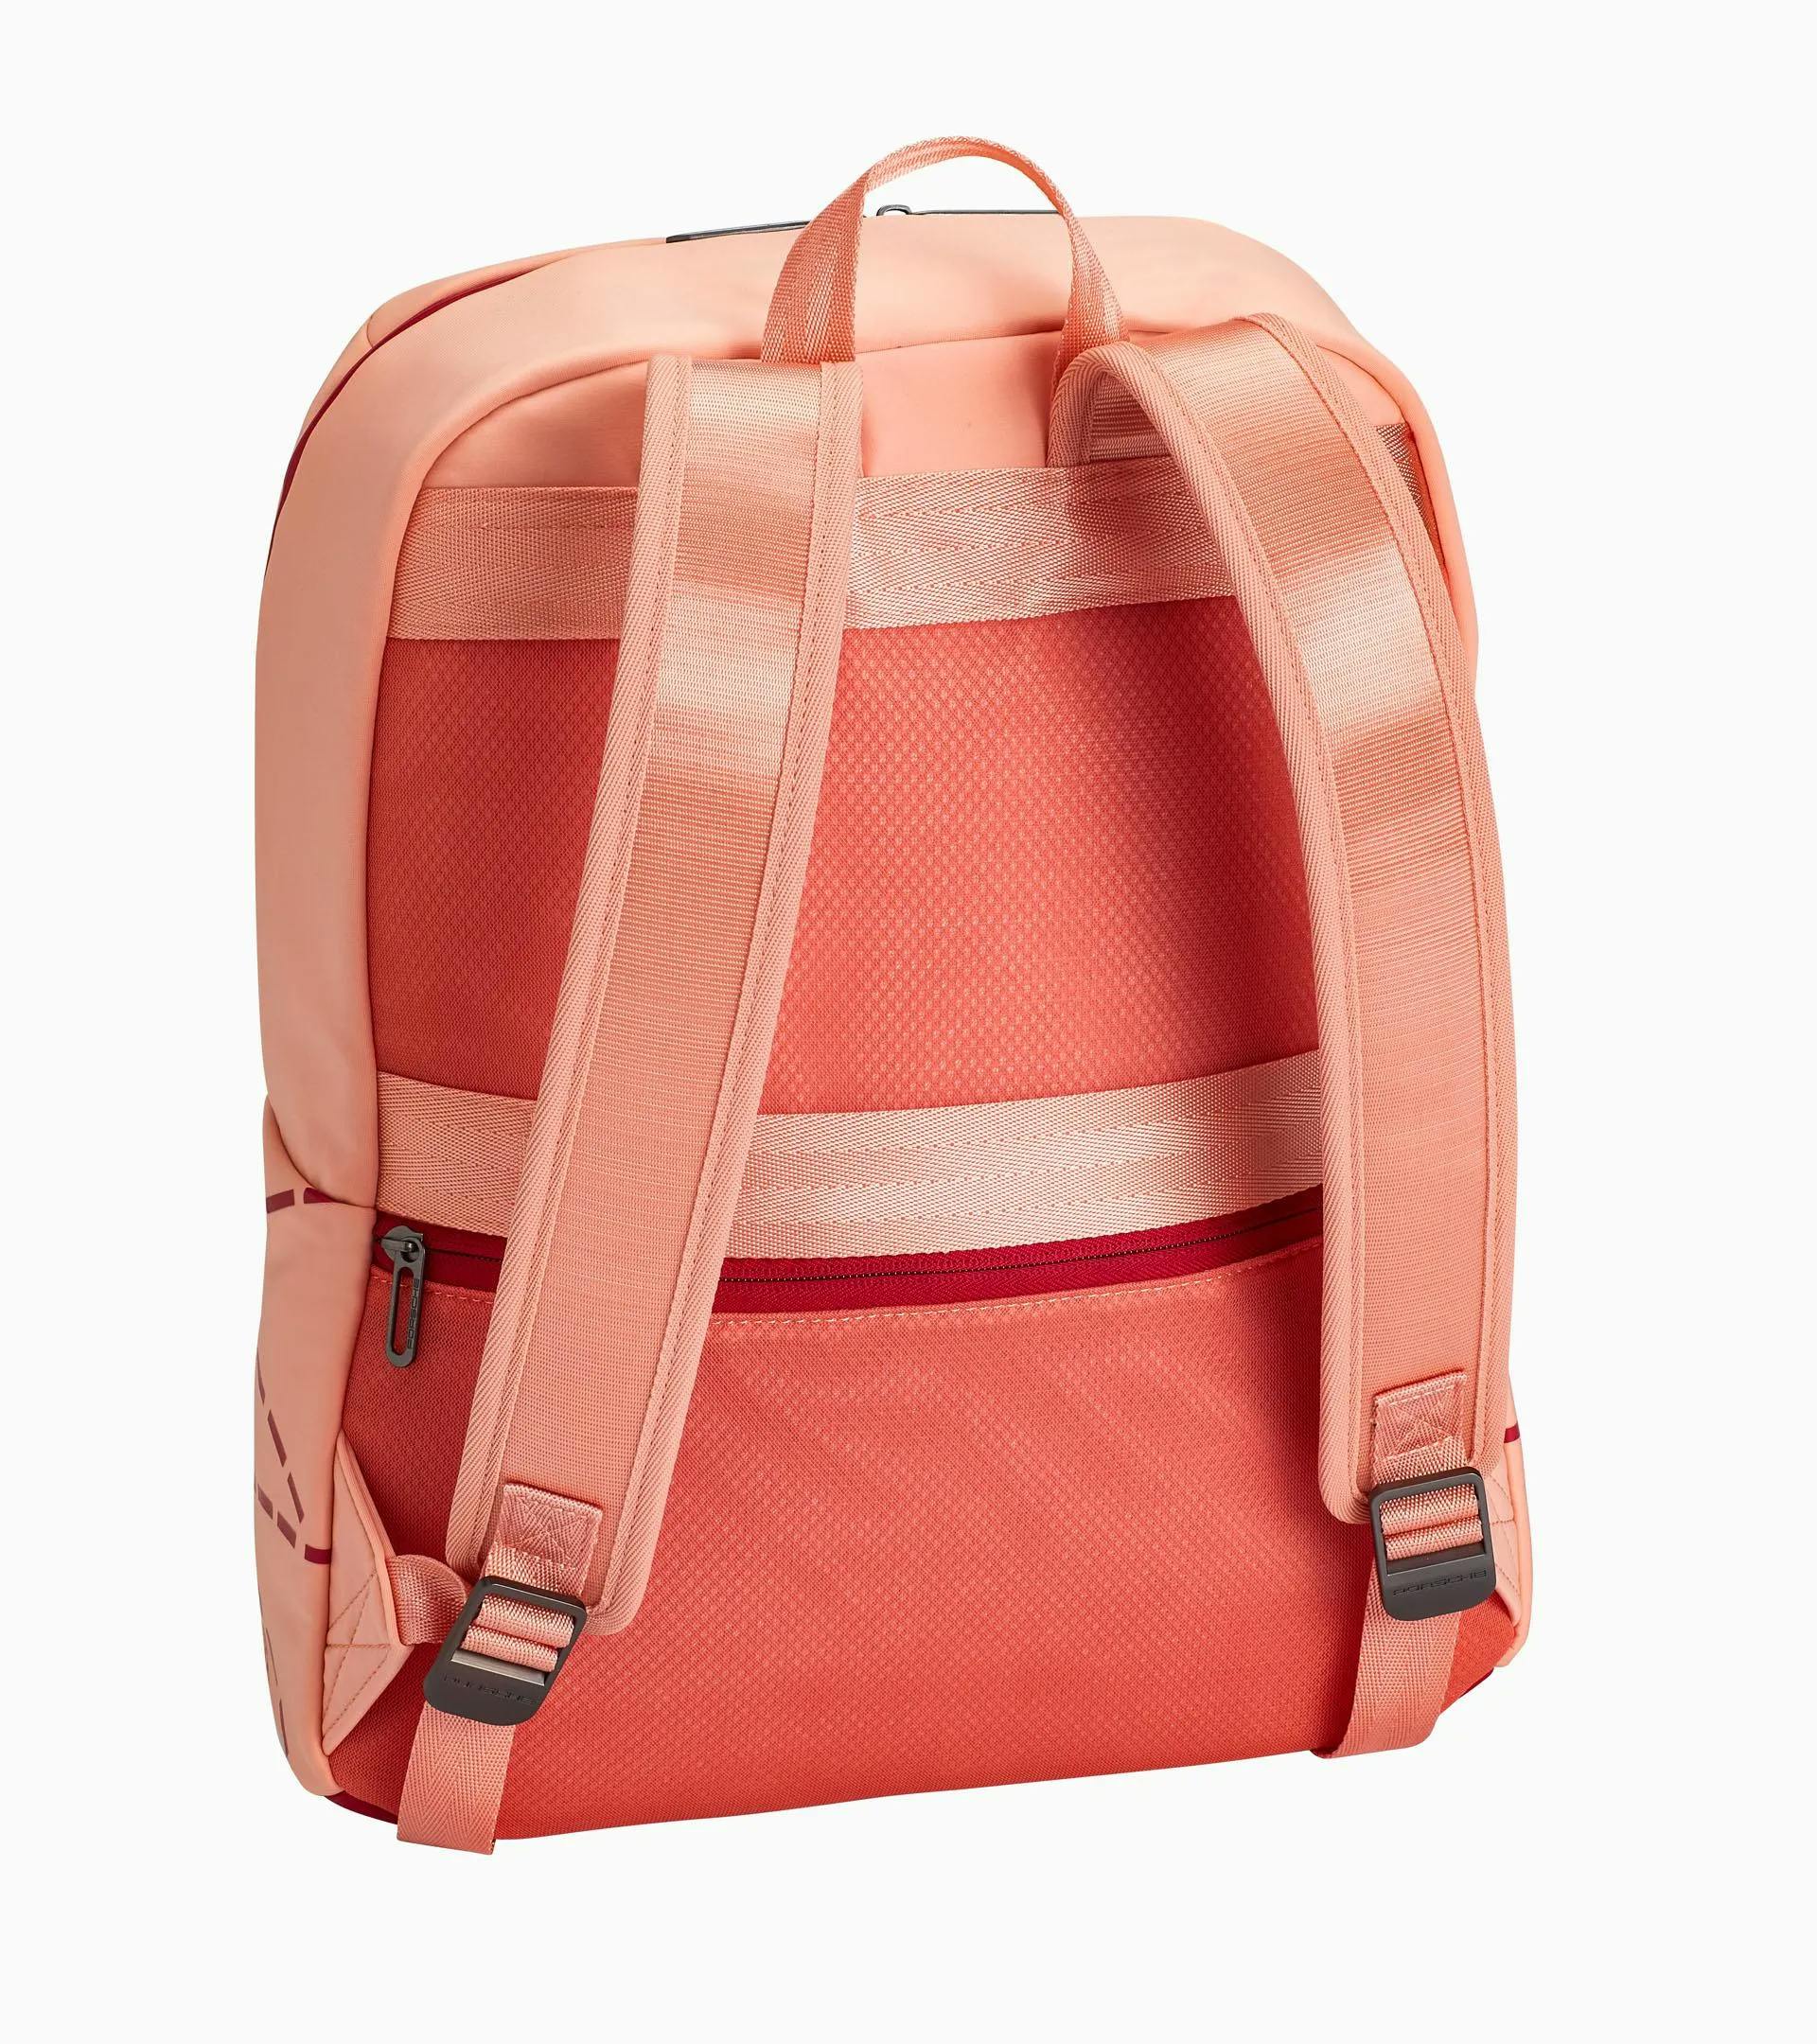 Backpack – 917 Pink Pig 2